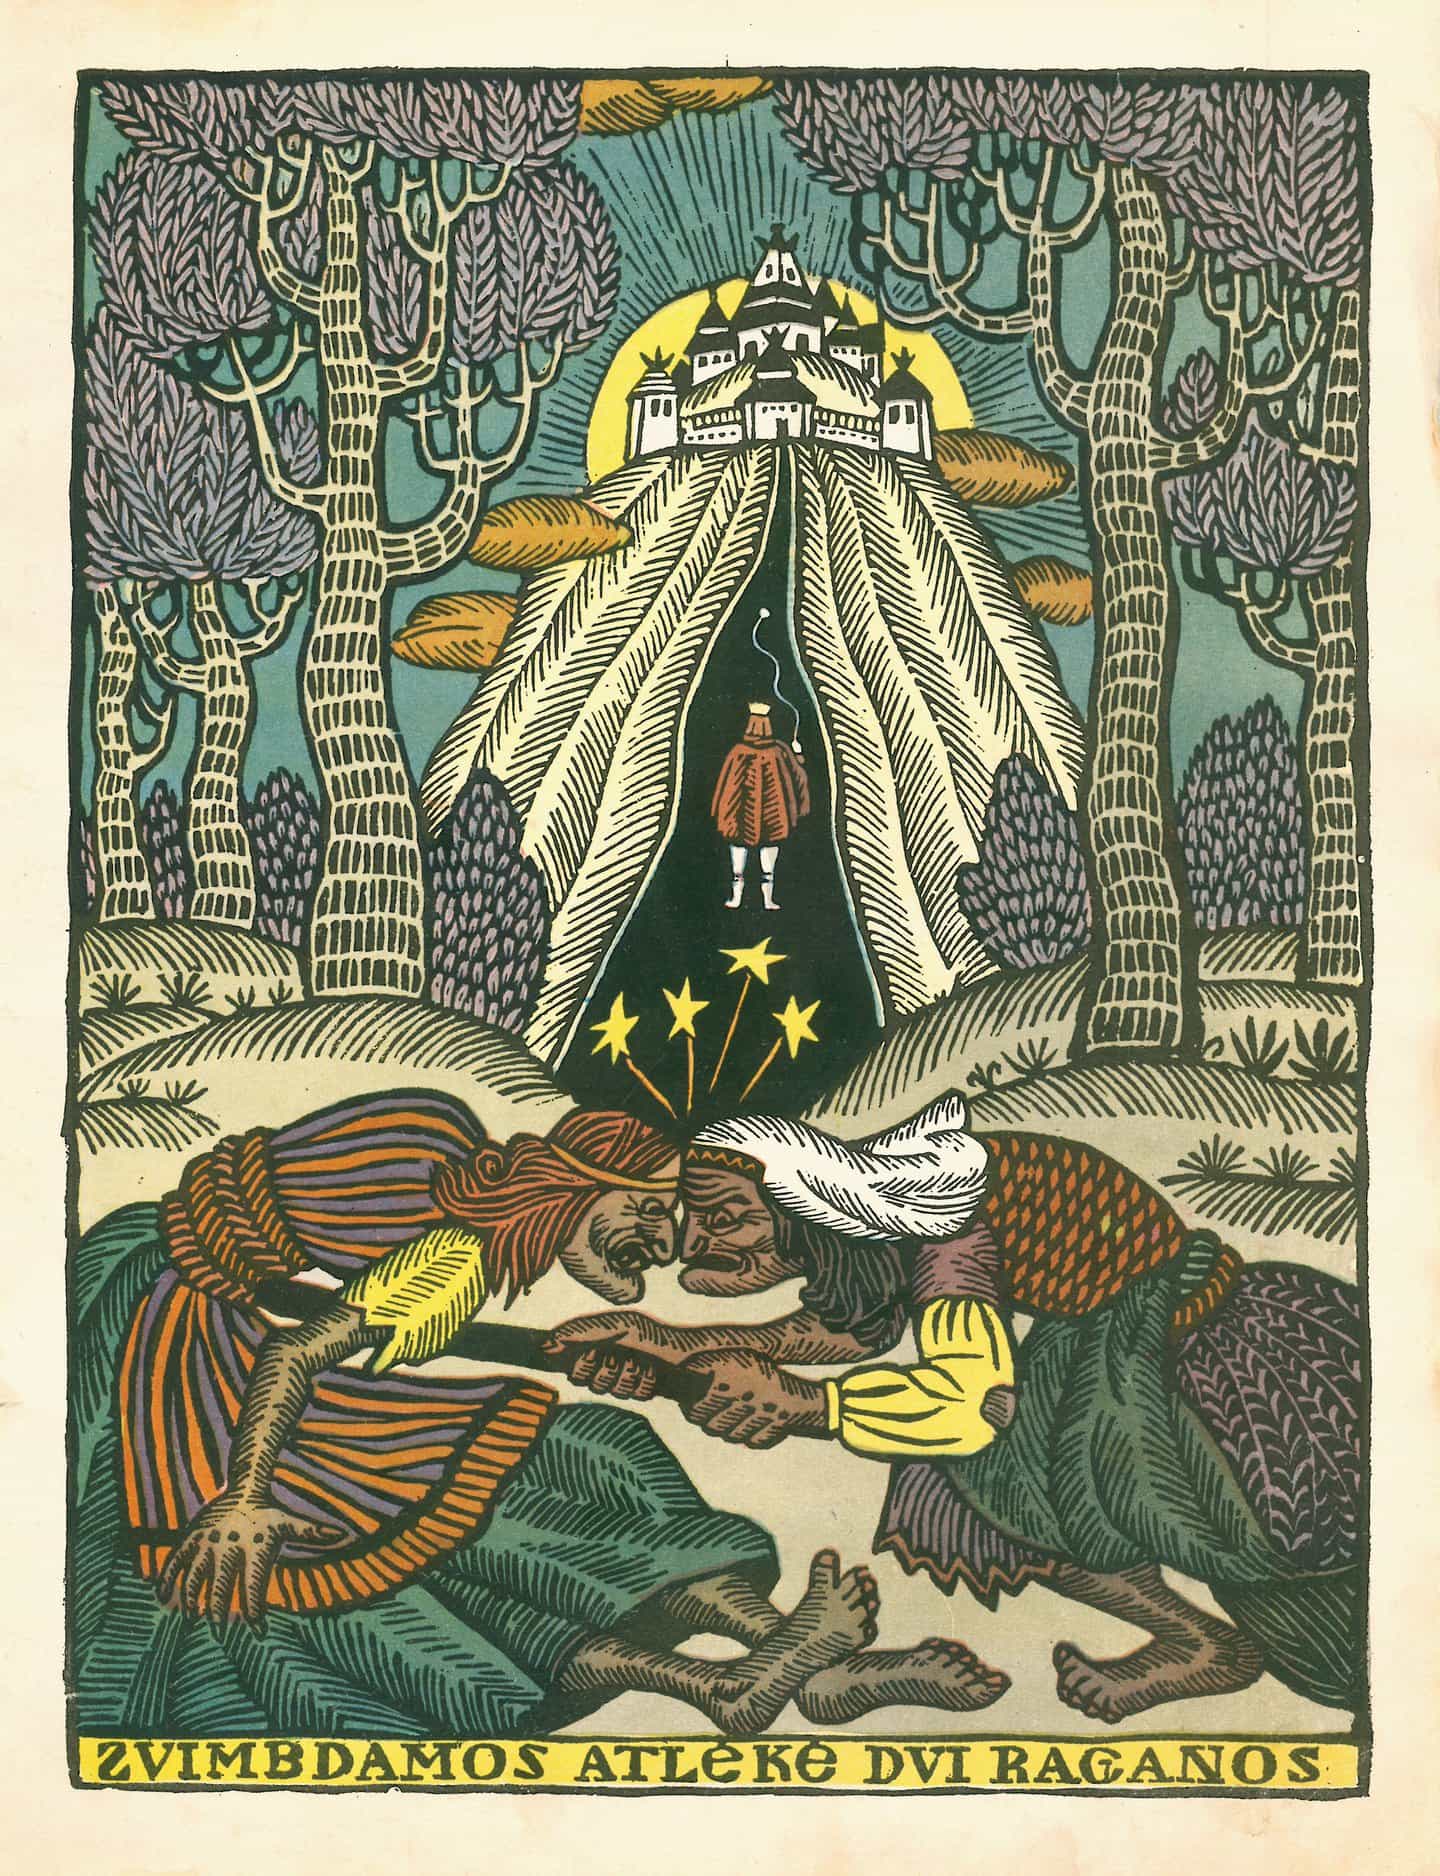 Mozaika: Albina Makunaite en el libro Saules Vaduotojas de Aldona Liobyte, 1972 (Todos los derechos de las ilustraciones pertenecen a sus autores)